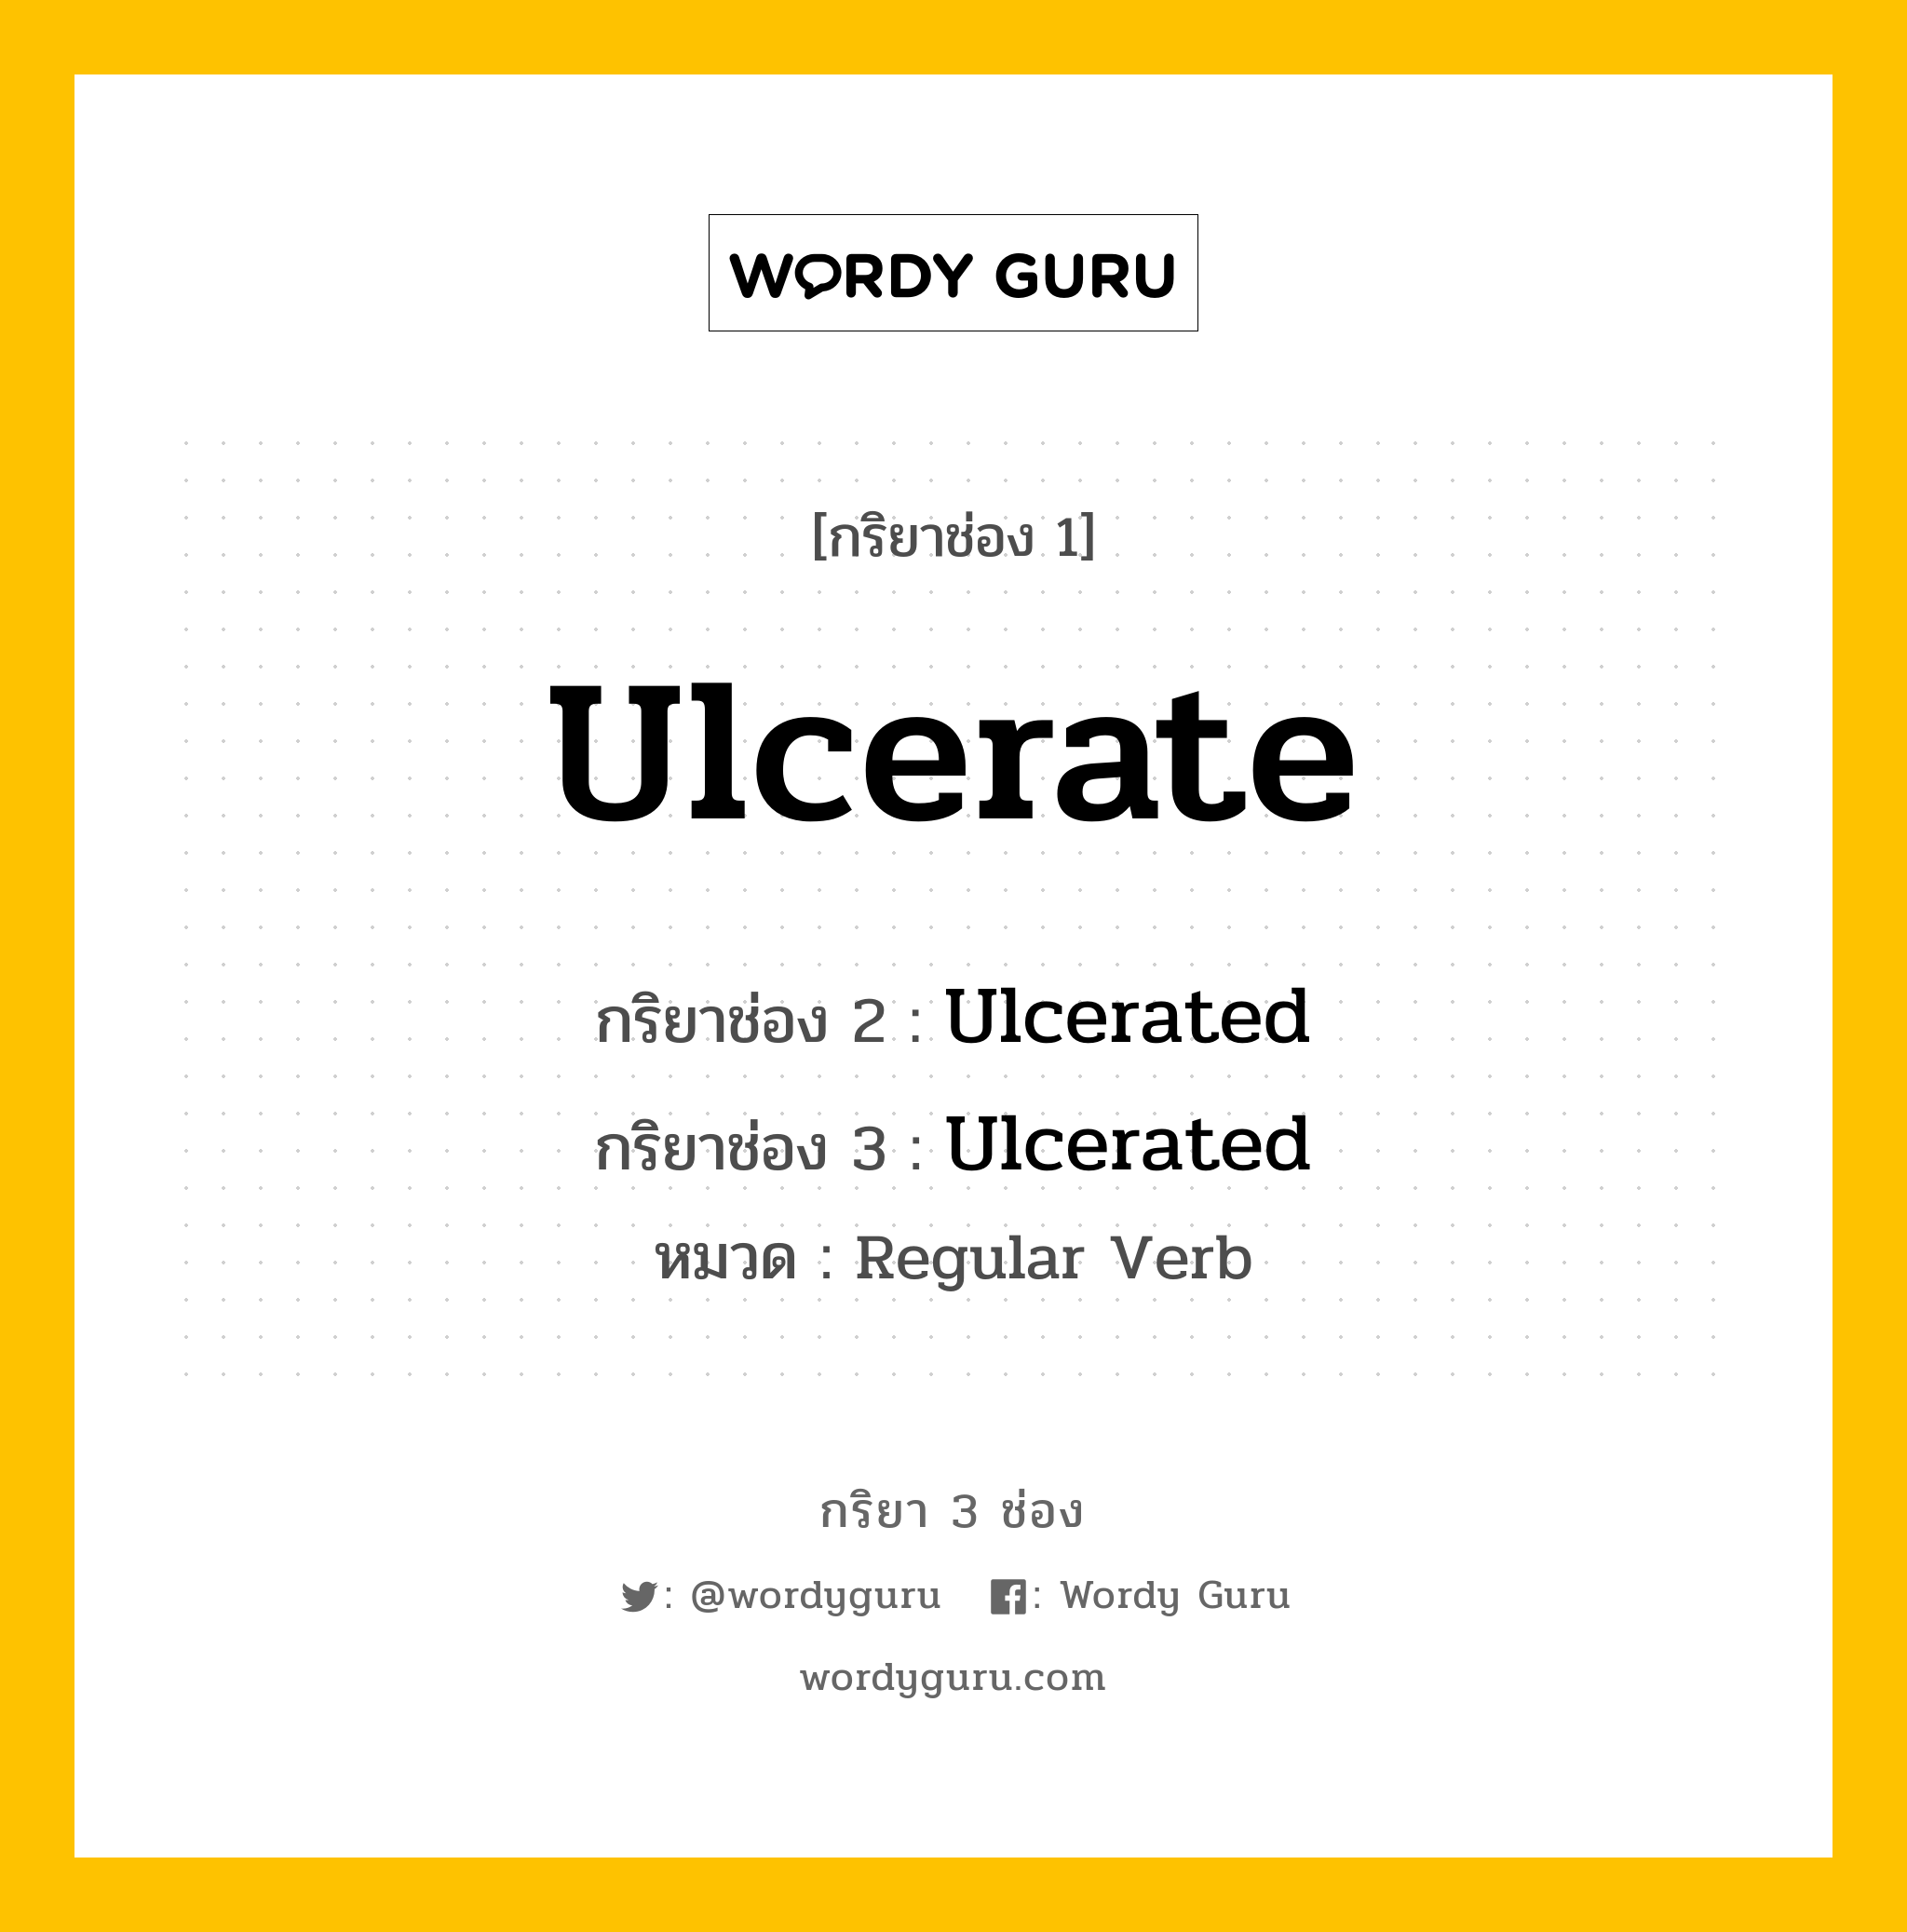 กริยา 3 ช่อง: Ulcerate ช่อง 2 Ulcerate ช่อง 3 คืออะไร, กริยาช่อง 1 Ulcerate กริยาช่อง 2 Ulcerated กริยาช่อง 3 Ulcerated หมวด Regular Verb หมวด Regular Verb